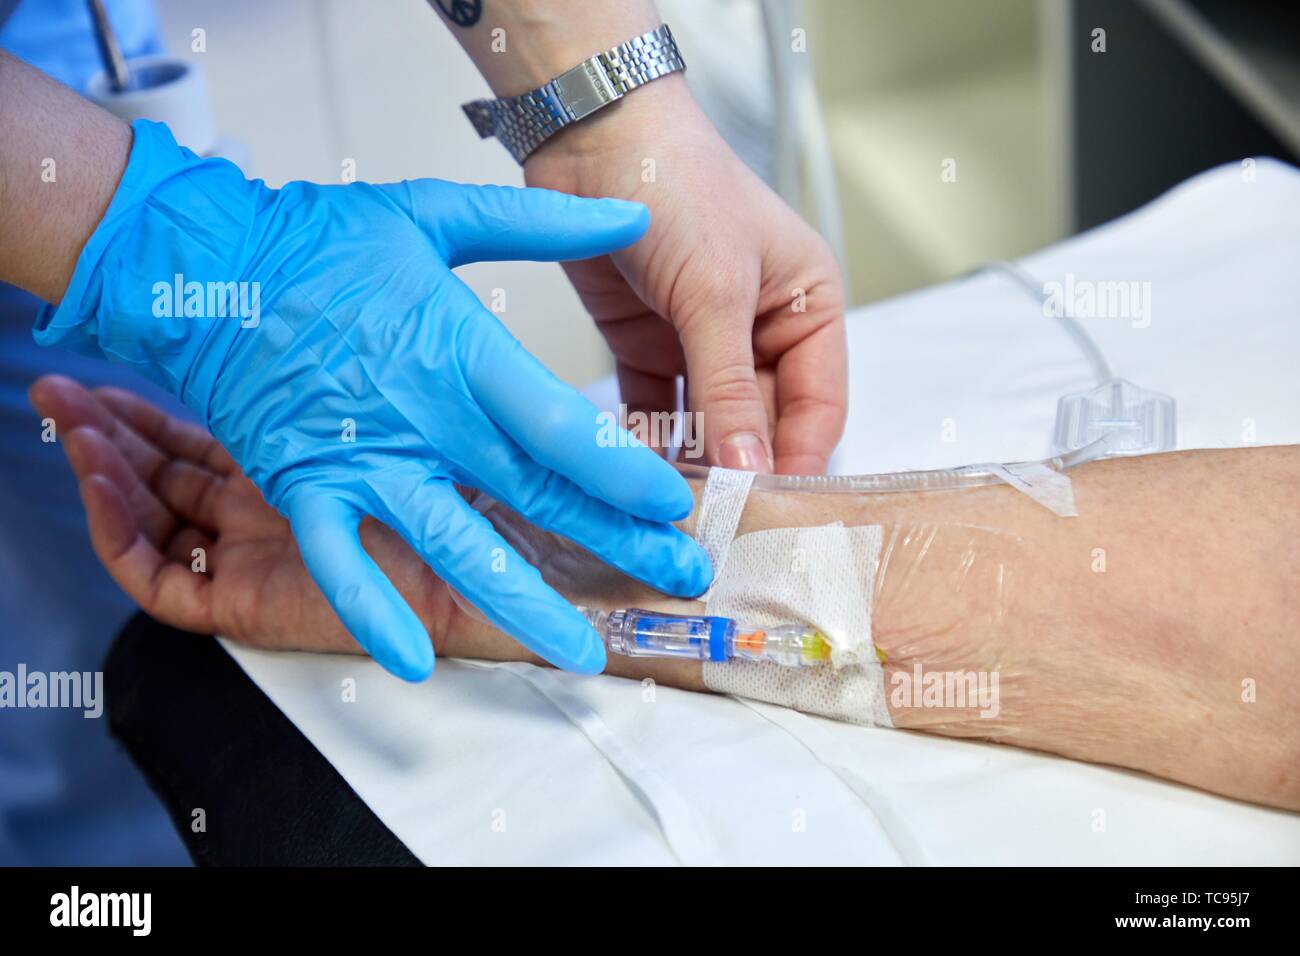 Nurse putting médicament par voie intraveineuse à un patient, la chimiothérapie, l'oncologie, l'hôpital Donostia, San Sebastian, Gipuzkoa, Pays Basque, Espagne Banque D'Images